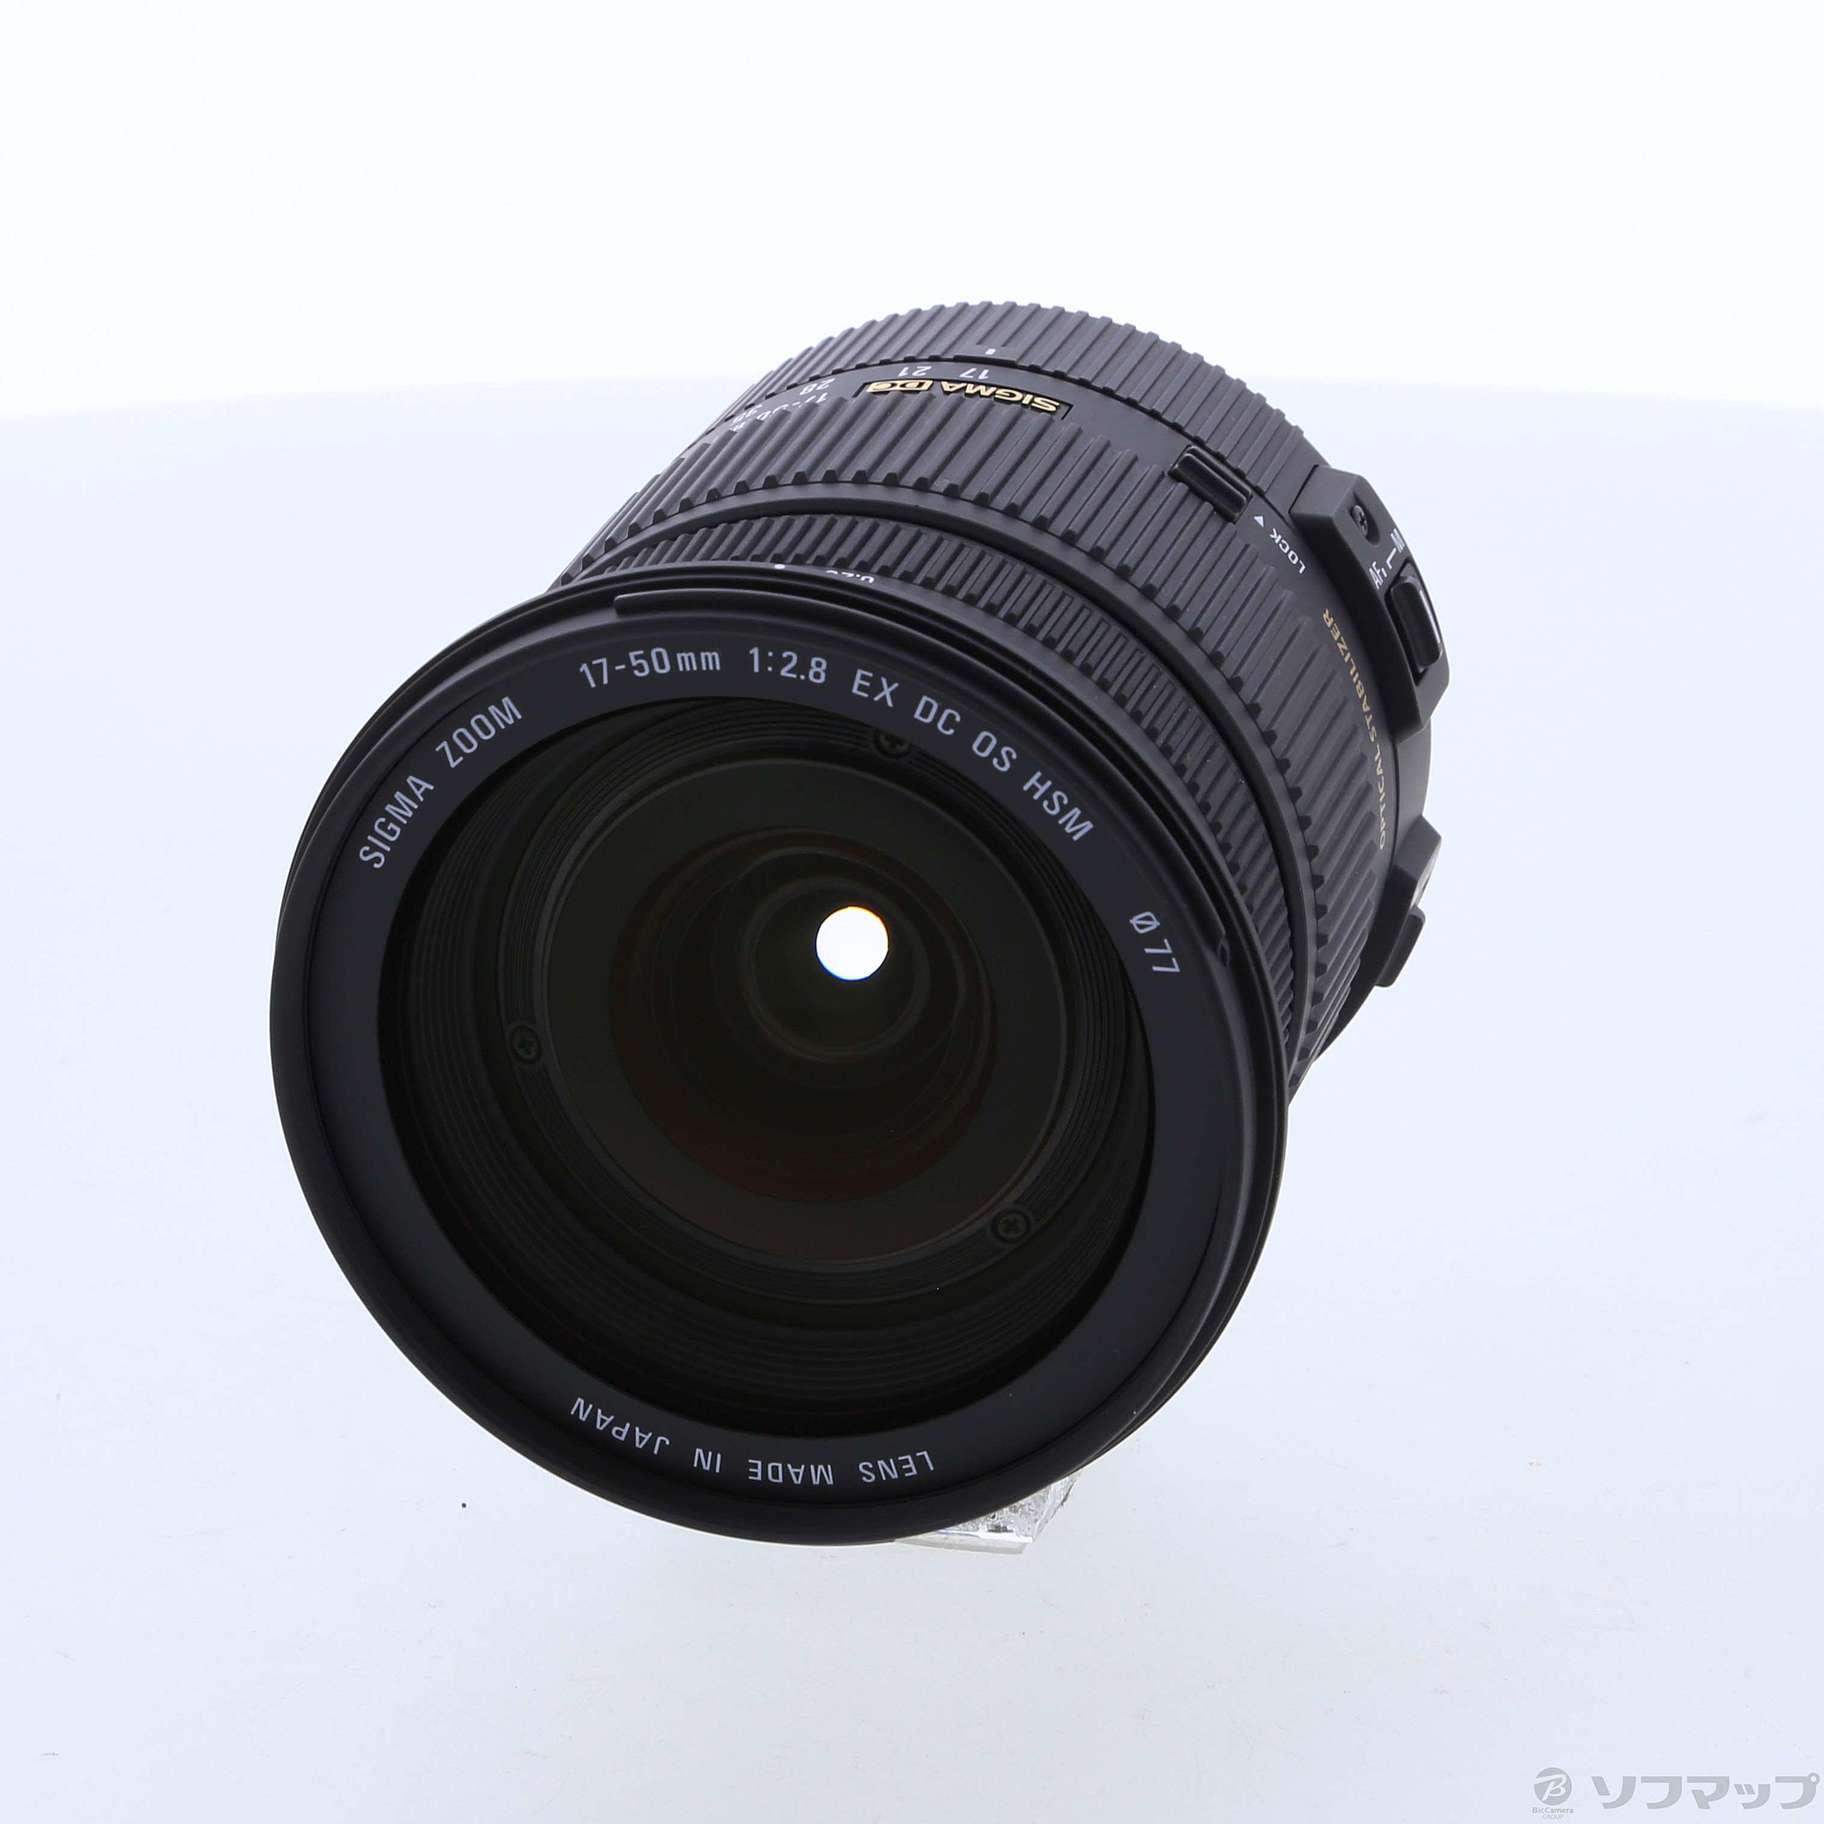 日本製品新品未開封17-50mm F2.8 EX DC HSM [ペンタックス用] レンズ(単焦点)